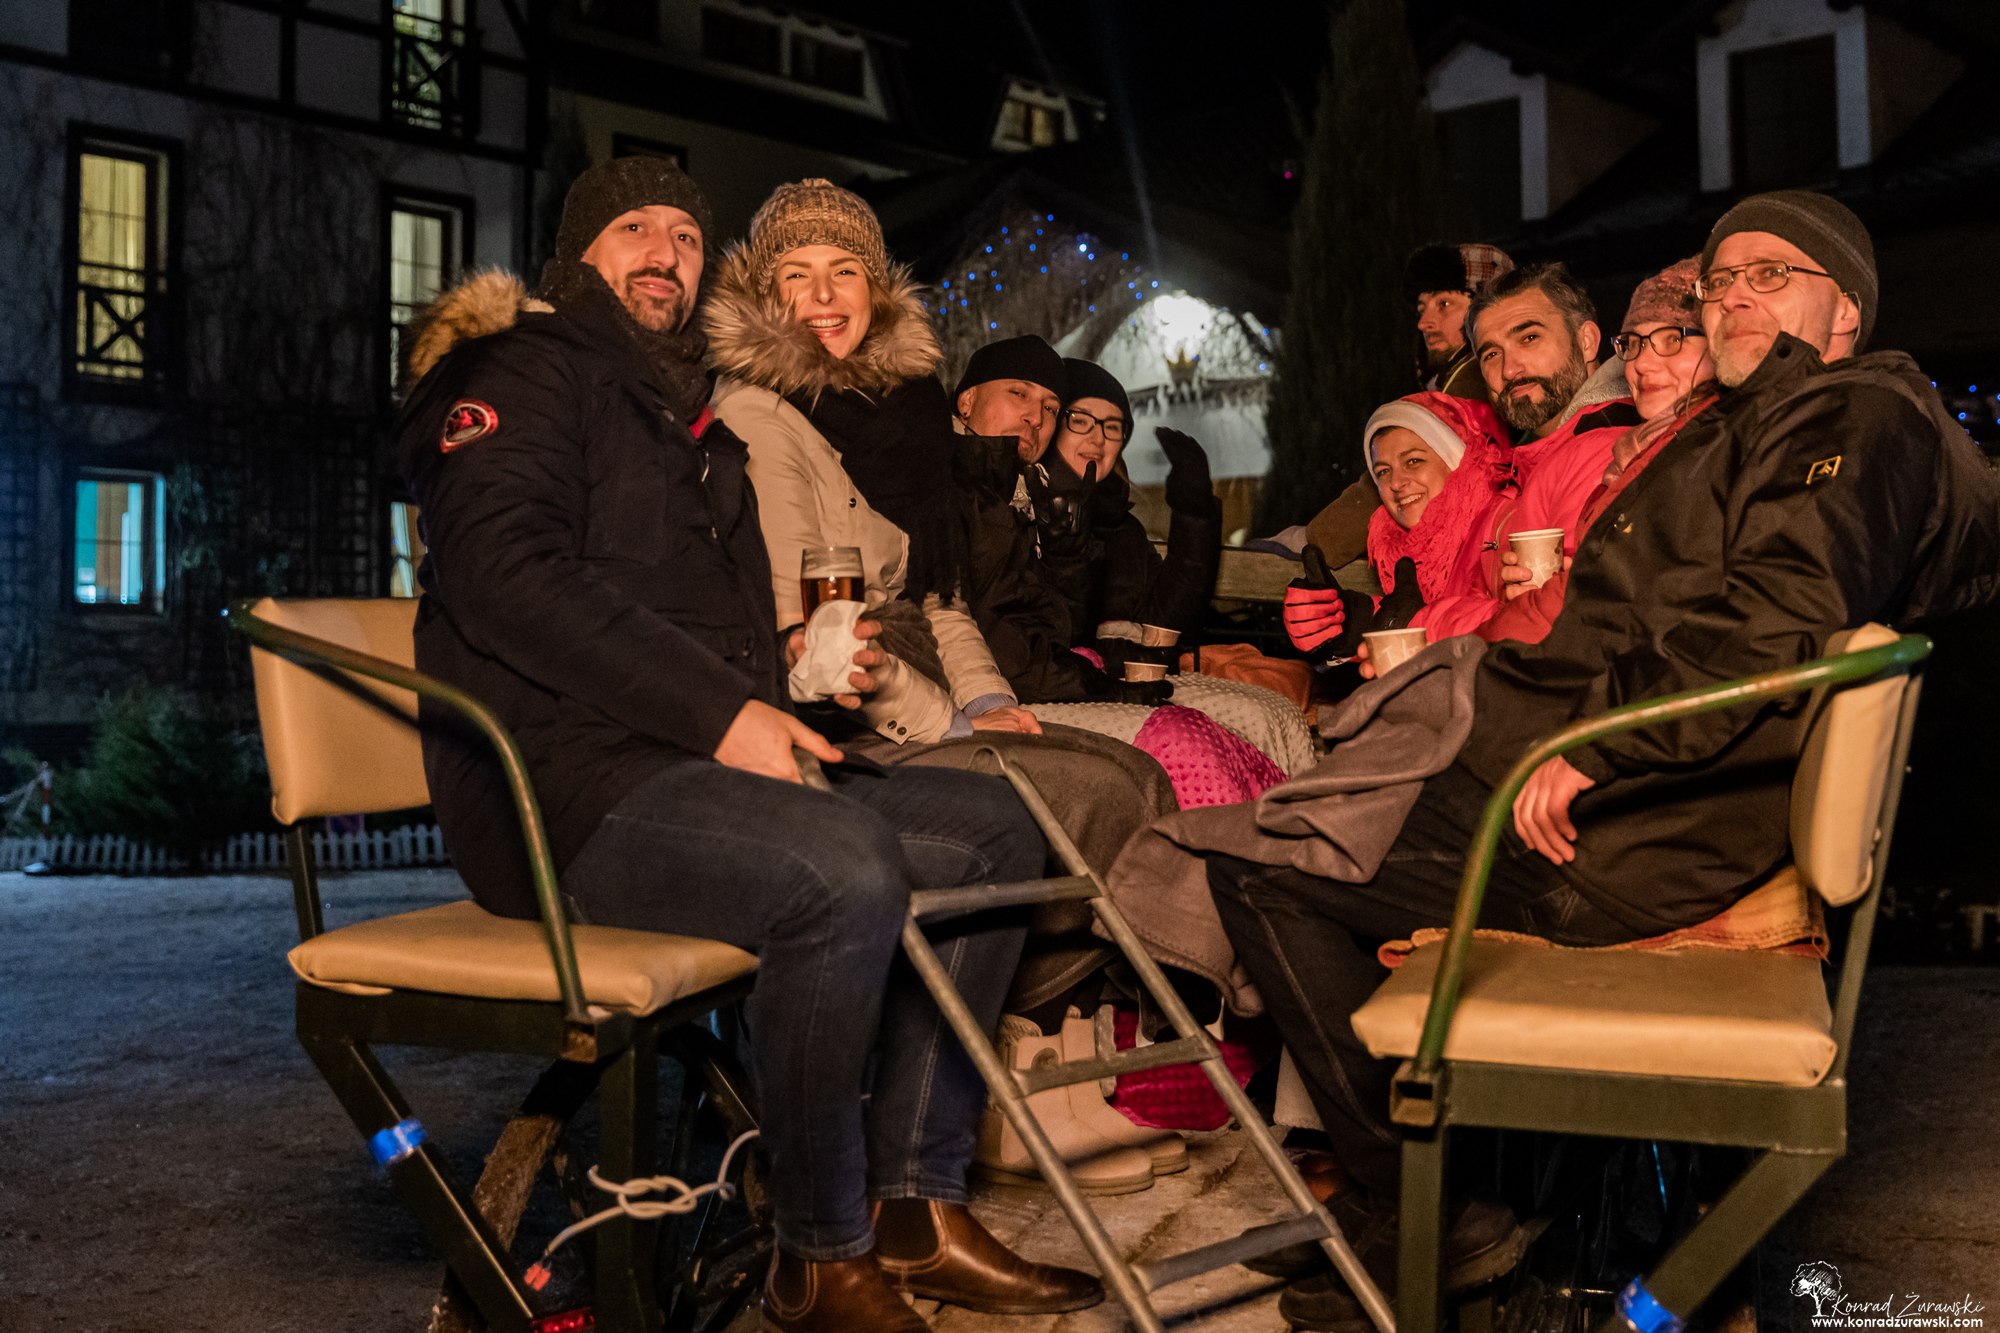 Impreza integracyjna, wycieczka i kulig zimą w okolicach Karpacza